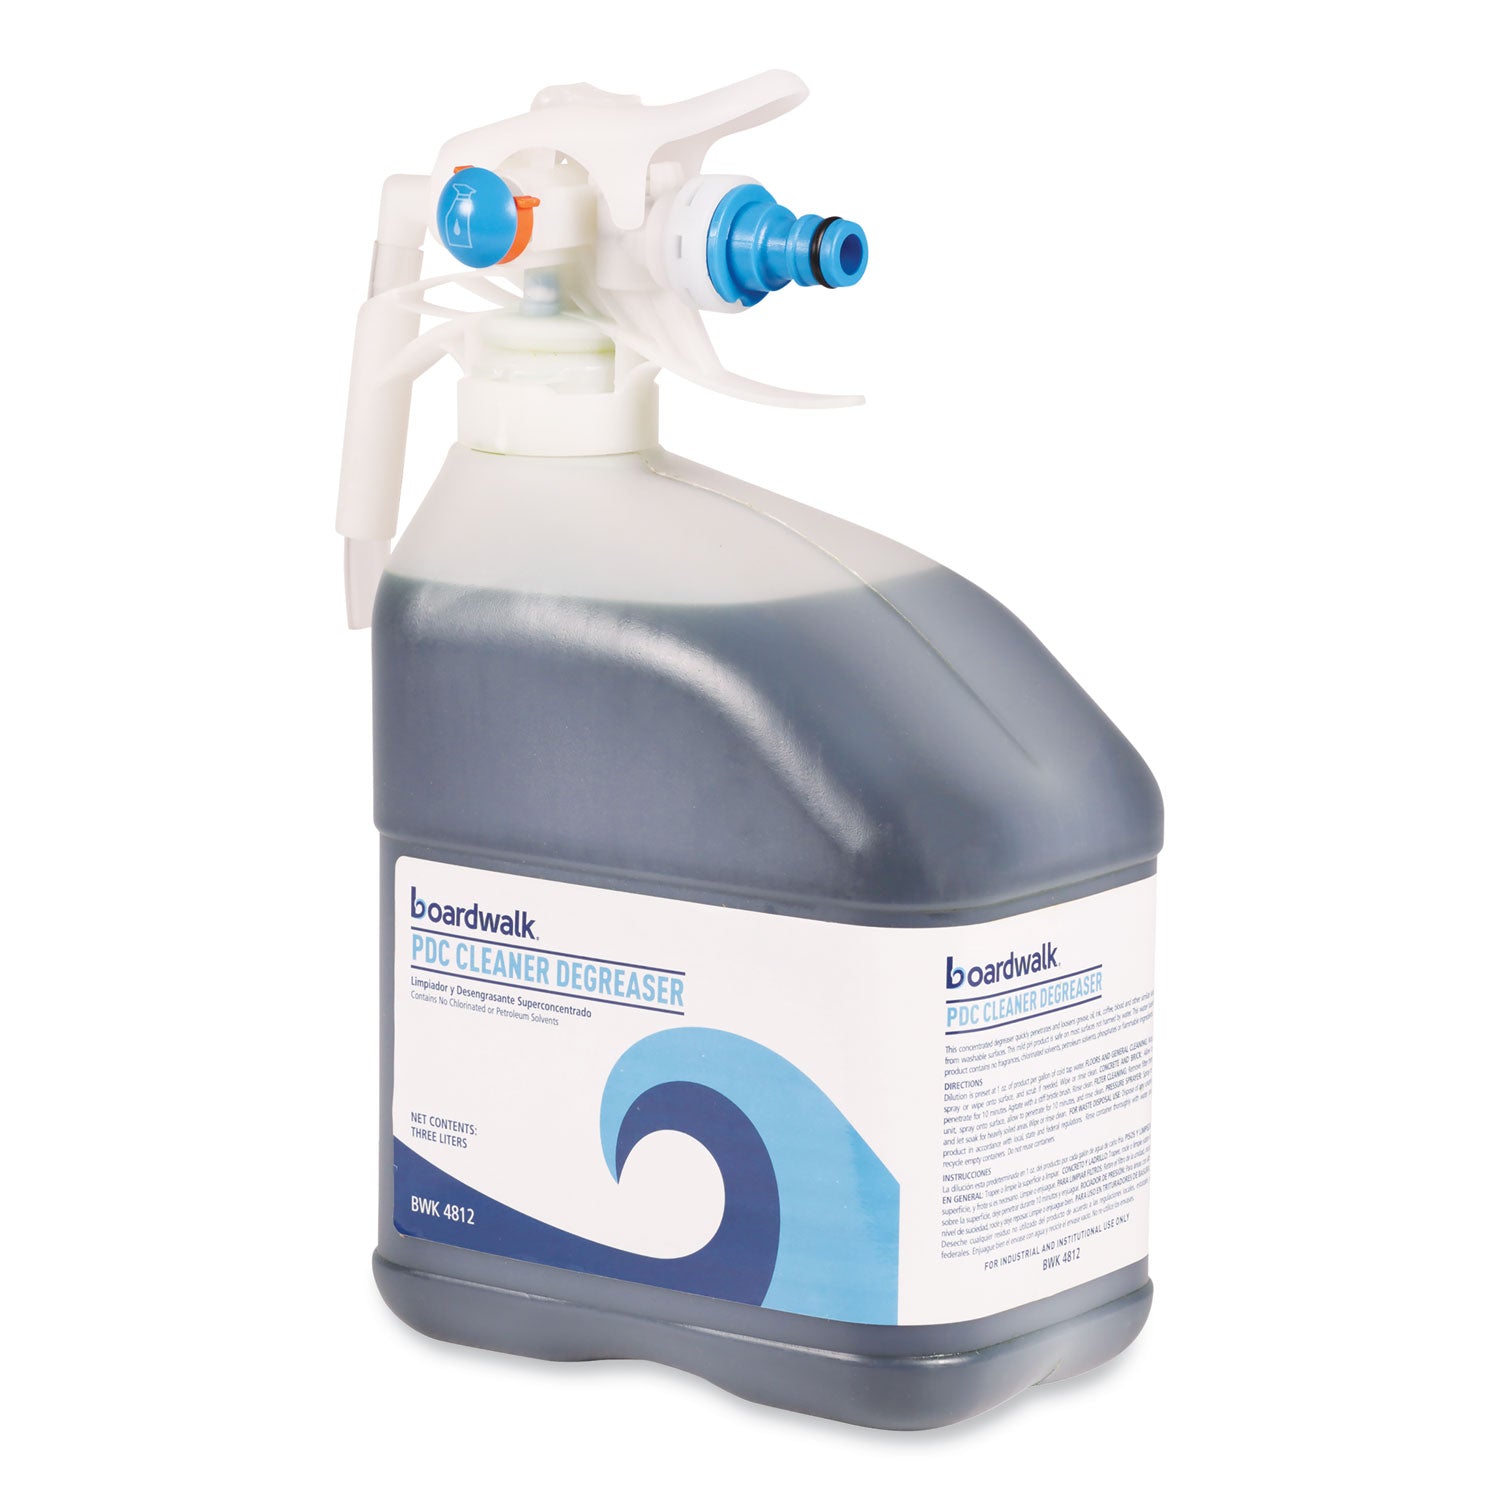 pdc-cleaner-degreaser-3-liter-bottle_bwk4812ea - 4